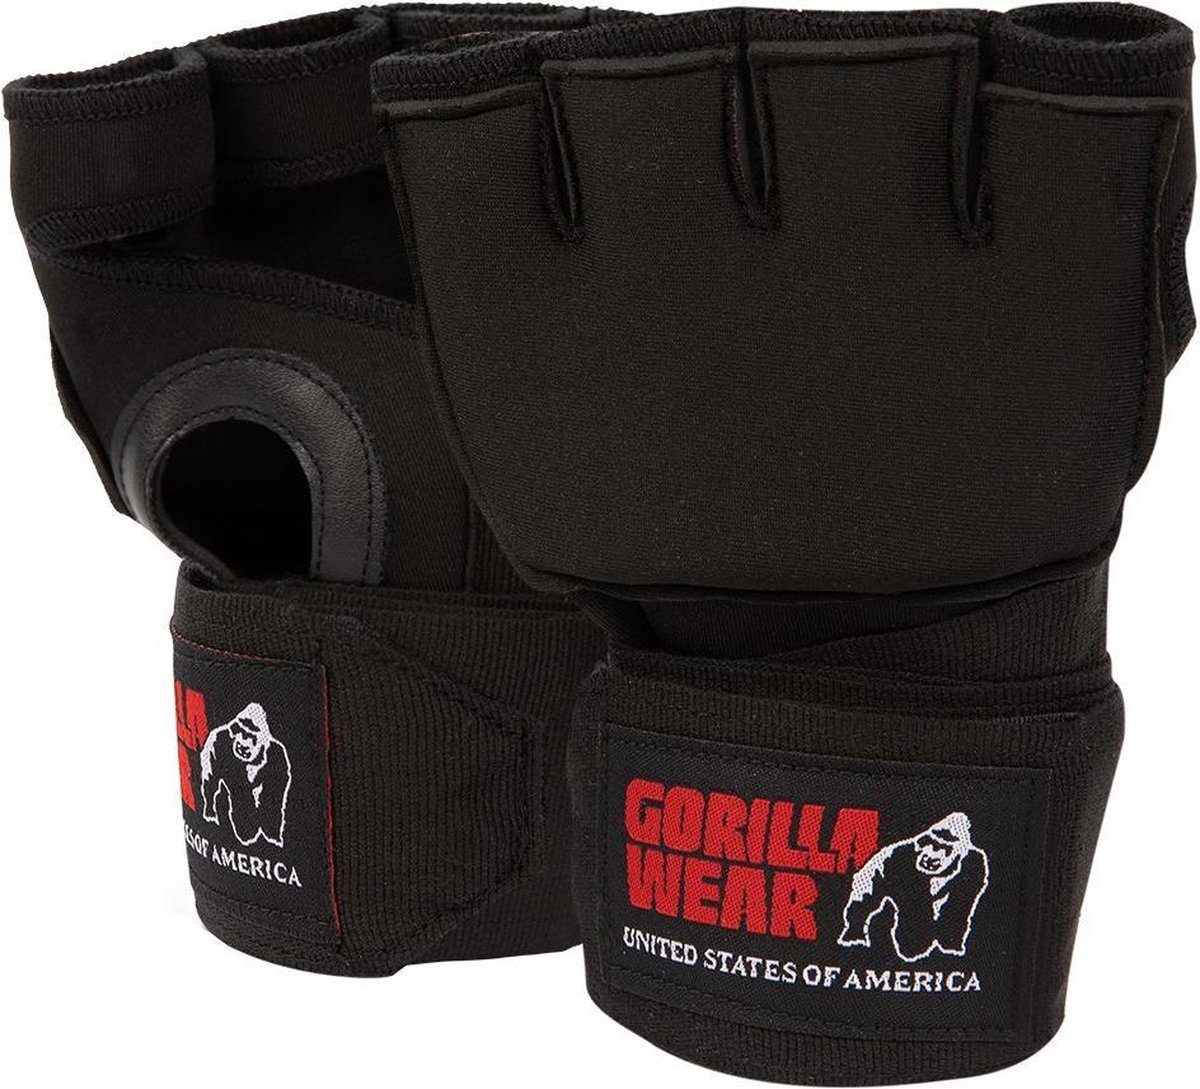 Gorilla Wear Gel Handschoen Boksen - Bandage - Binnenhandschoen - S/M - Gorilla Wear